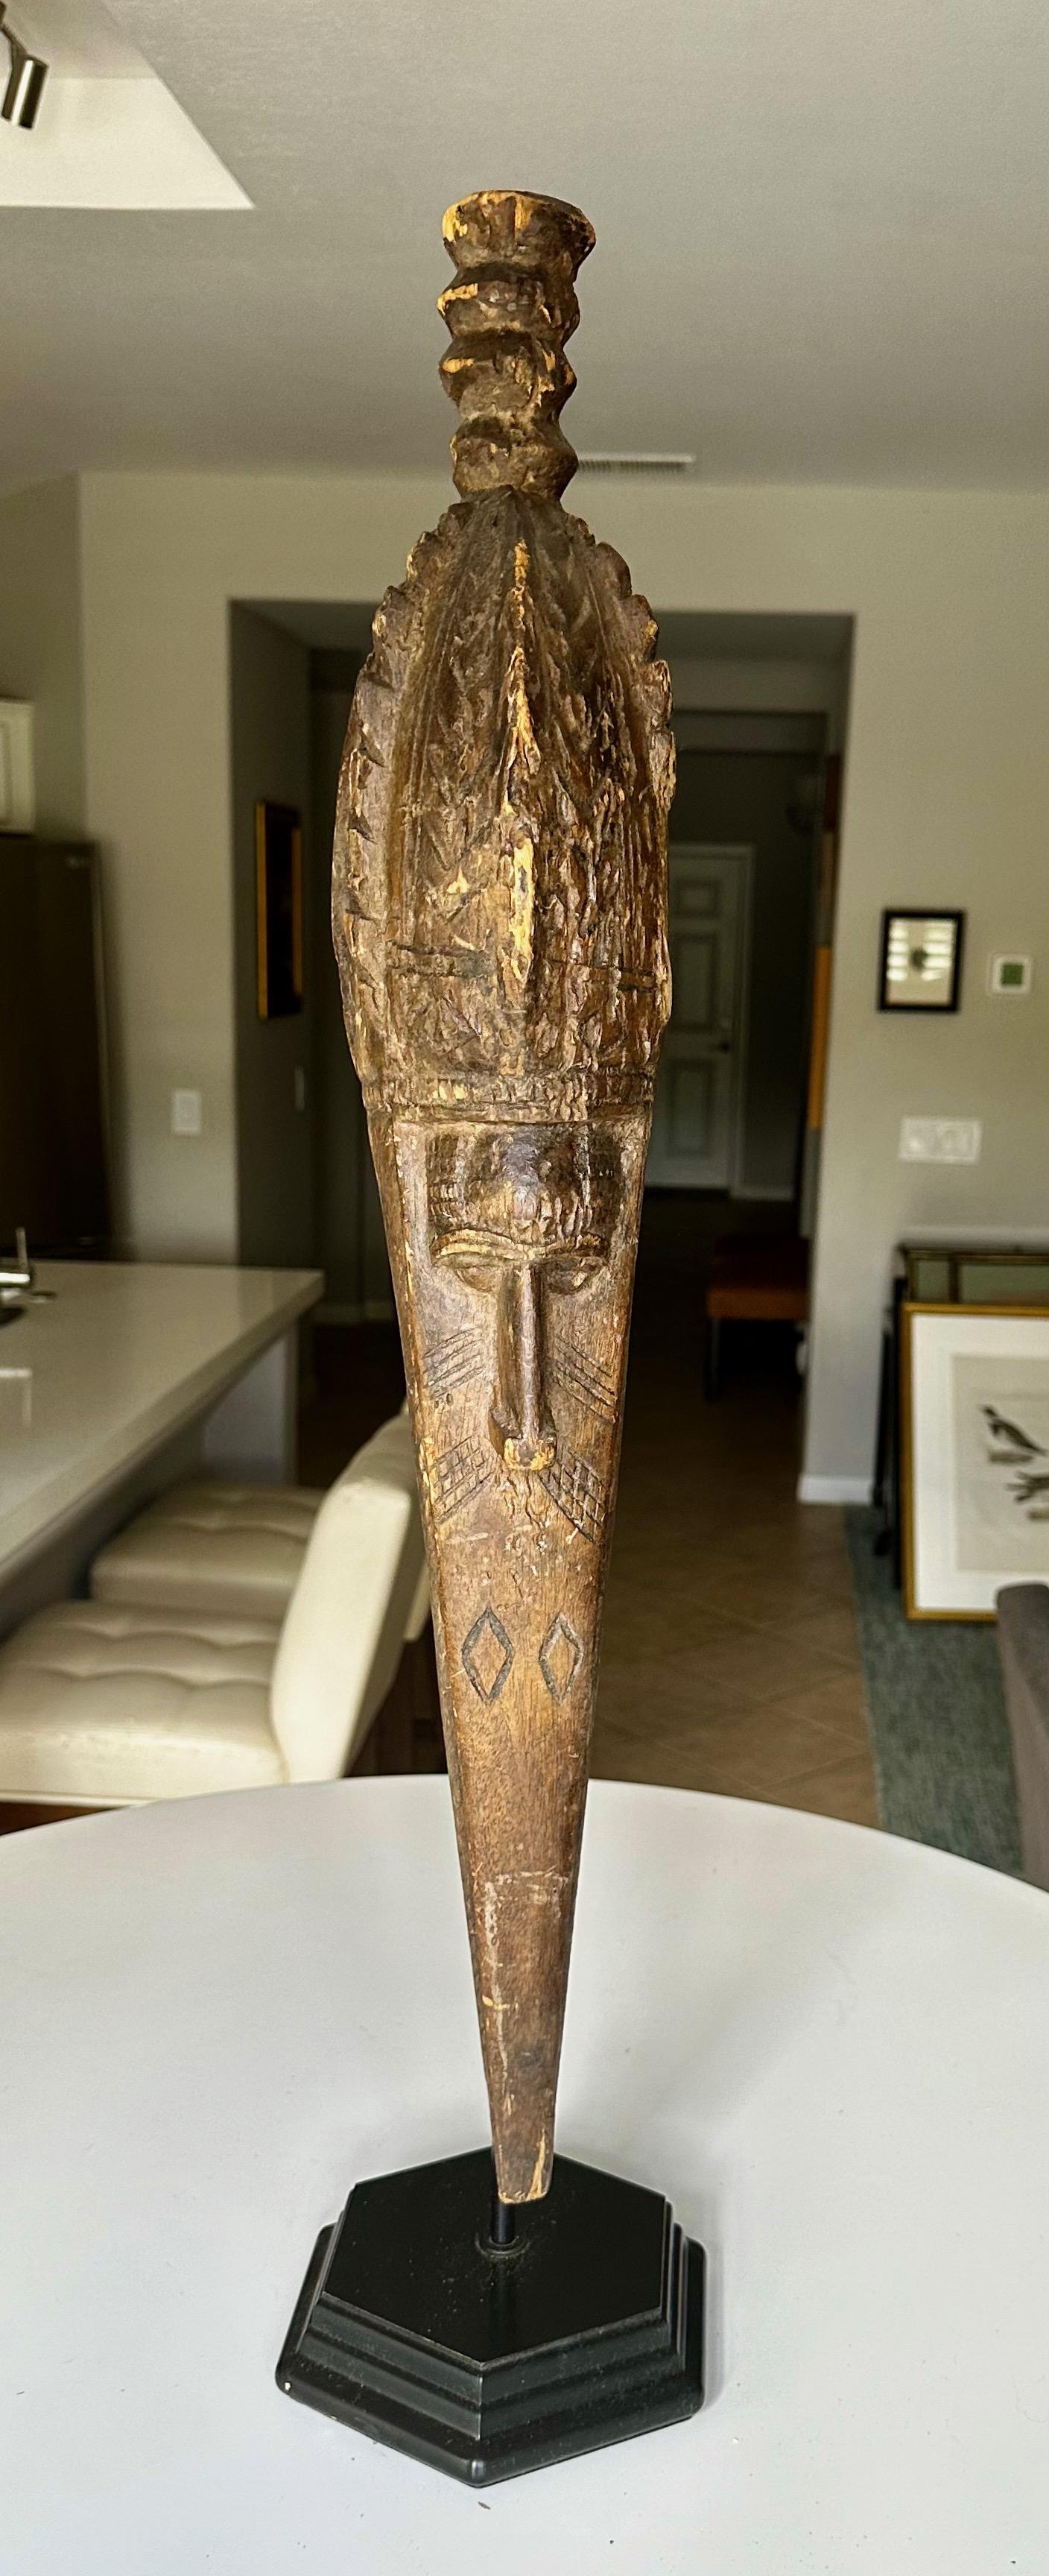 Antigua escultura de máscara Baga anok o elek de madera tallada, con elementos en forma de pájaro y rostro humano, realizada por el pueblo Baga (Guinea, África Occidental). Presenta pico de ave largo y puntiagudo, tallas incisas y rostro humano